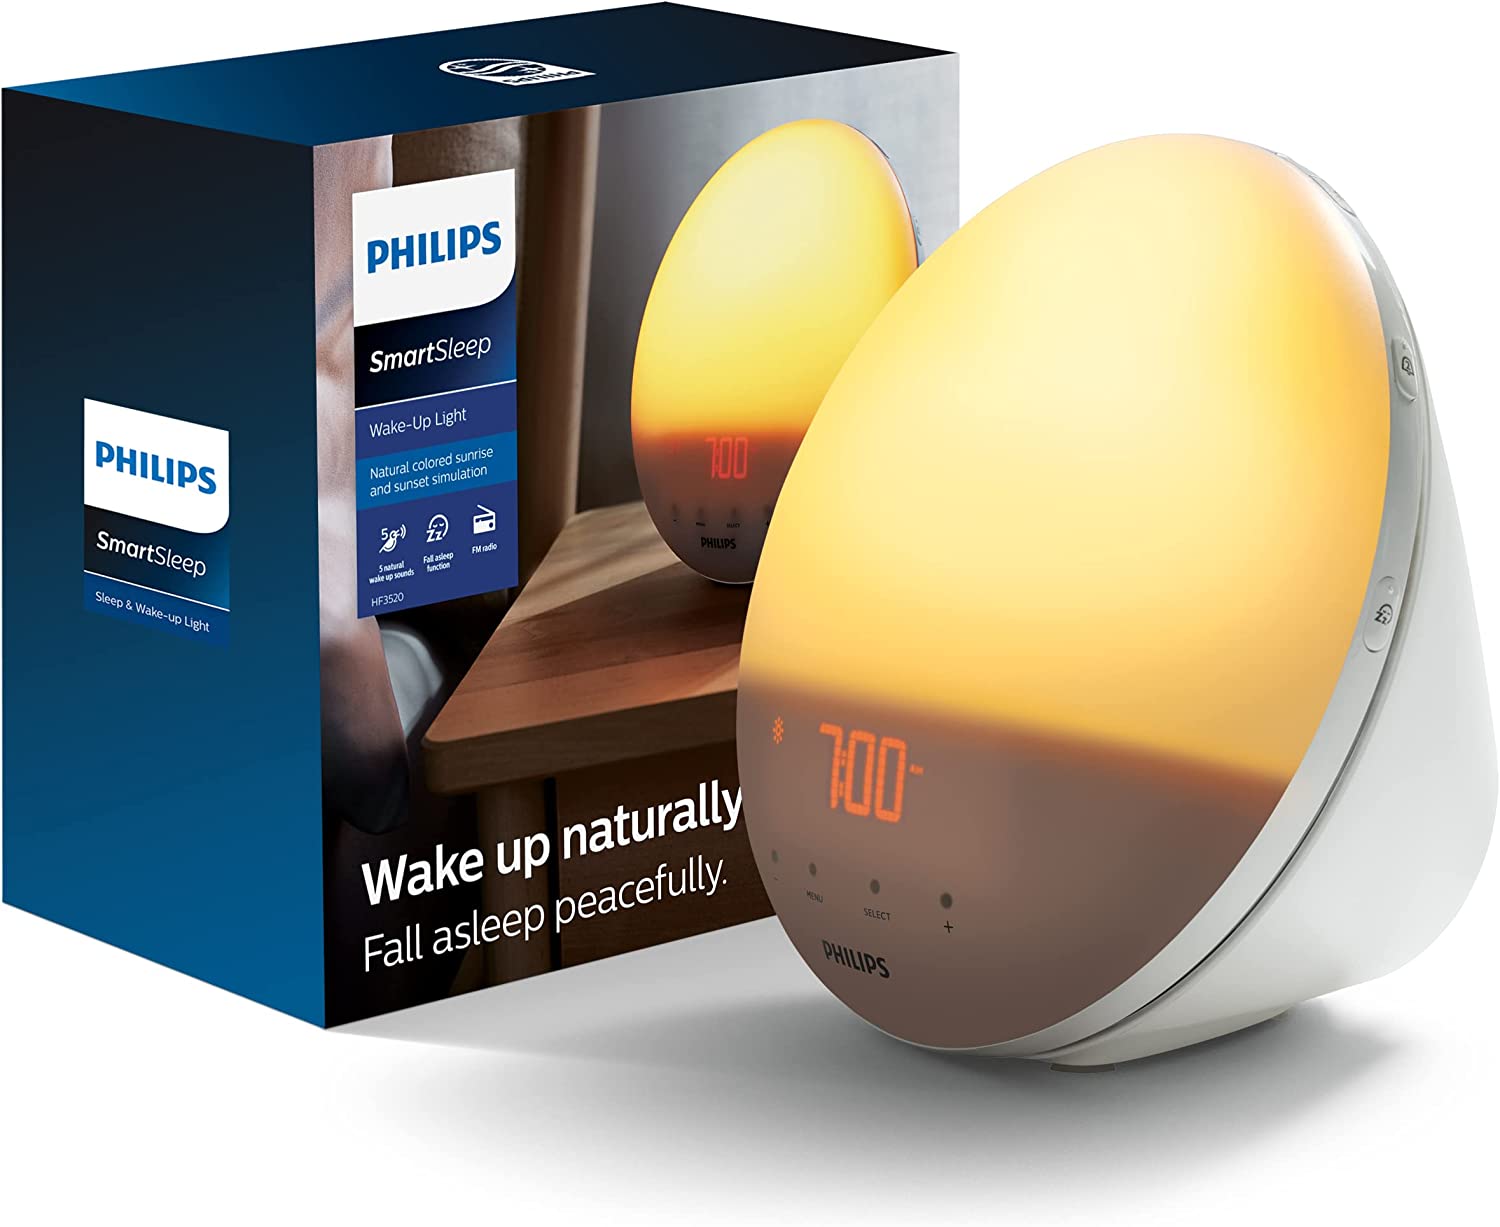 Philips wake up light